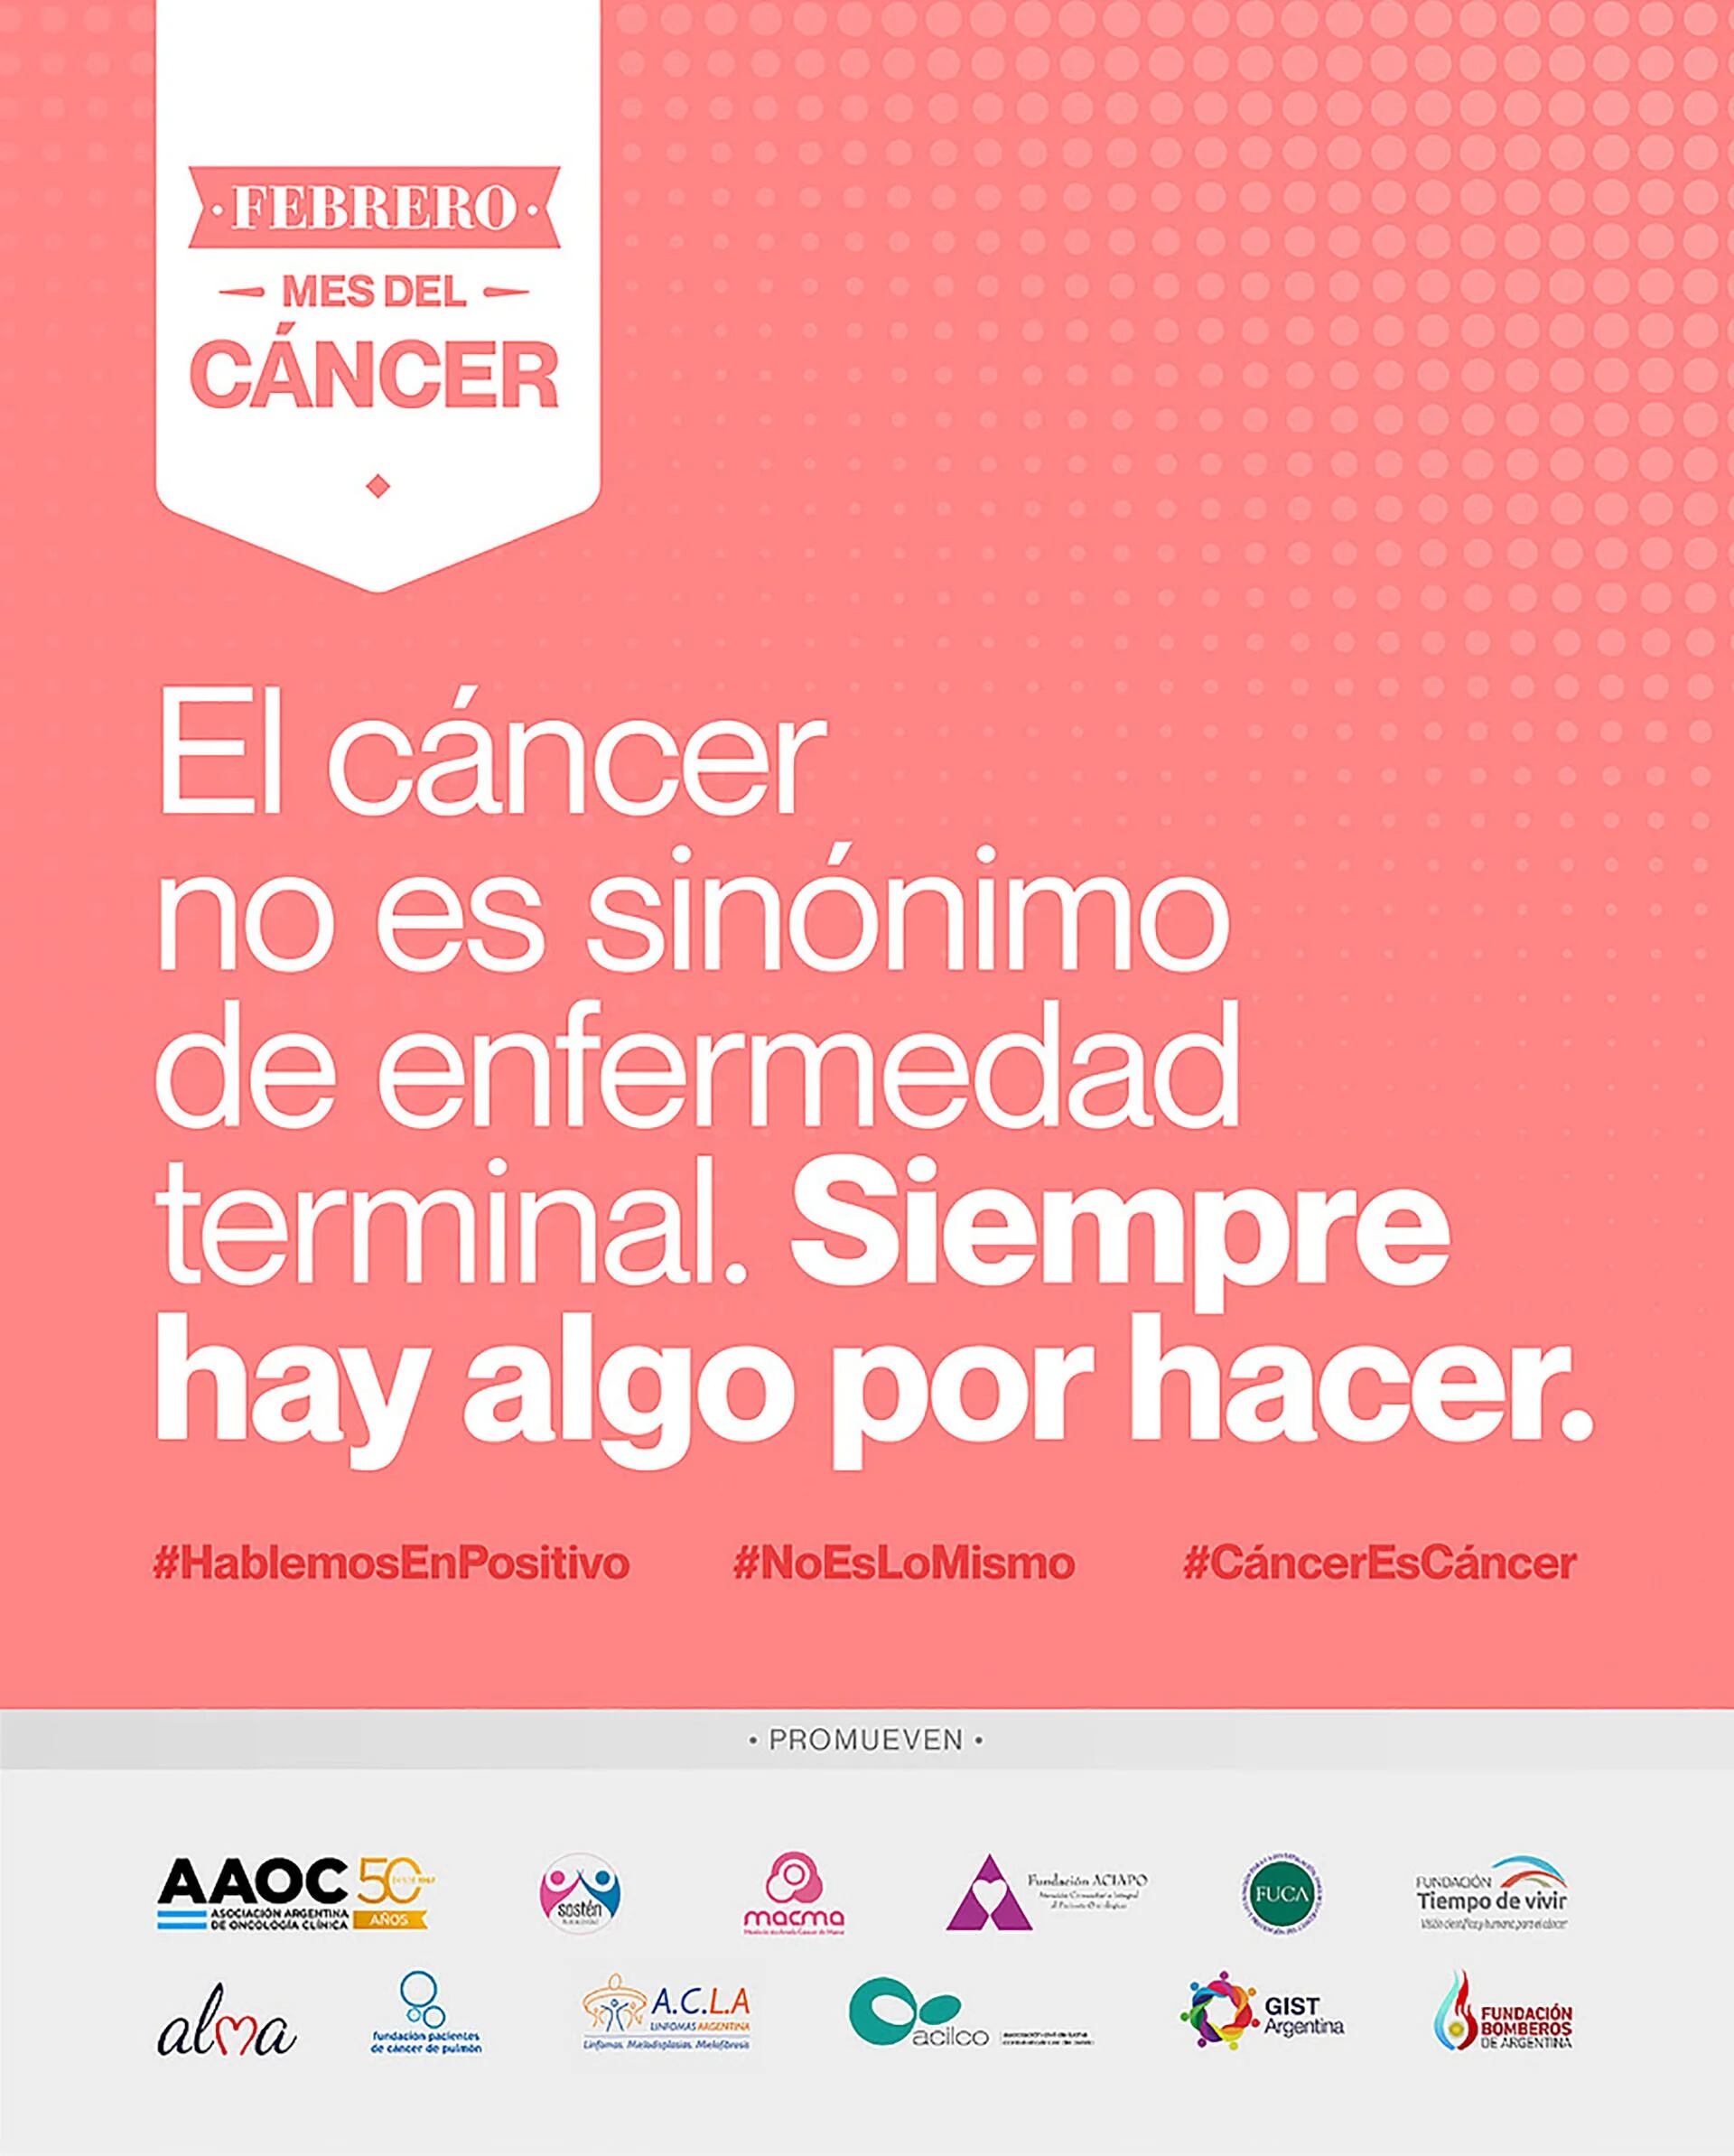 “Los pacientes no están en condiciones de recibir información asociada a la ´lucha que tienen que enfrentar para vencer la enfermedad´; para ´no morir´. Esa idea está totalmente alejada de la realidad actual del cáncer”, afirma Marta Artigas, presidenta de Fundación ACIAPO.